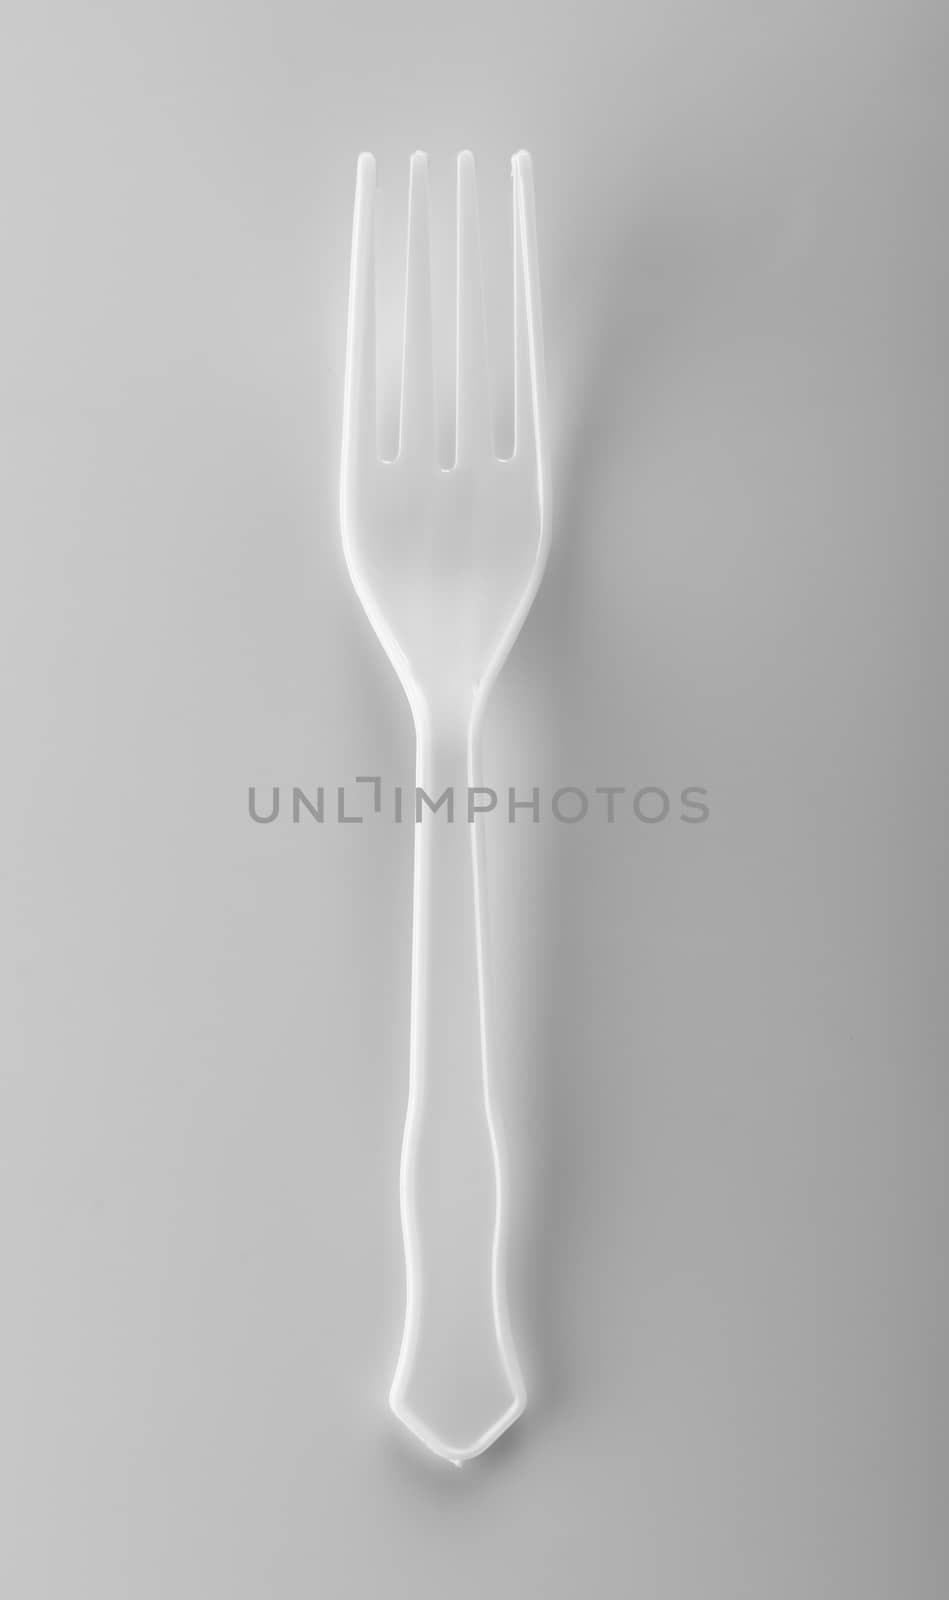 plastic forks on white background